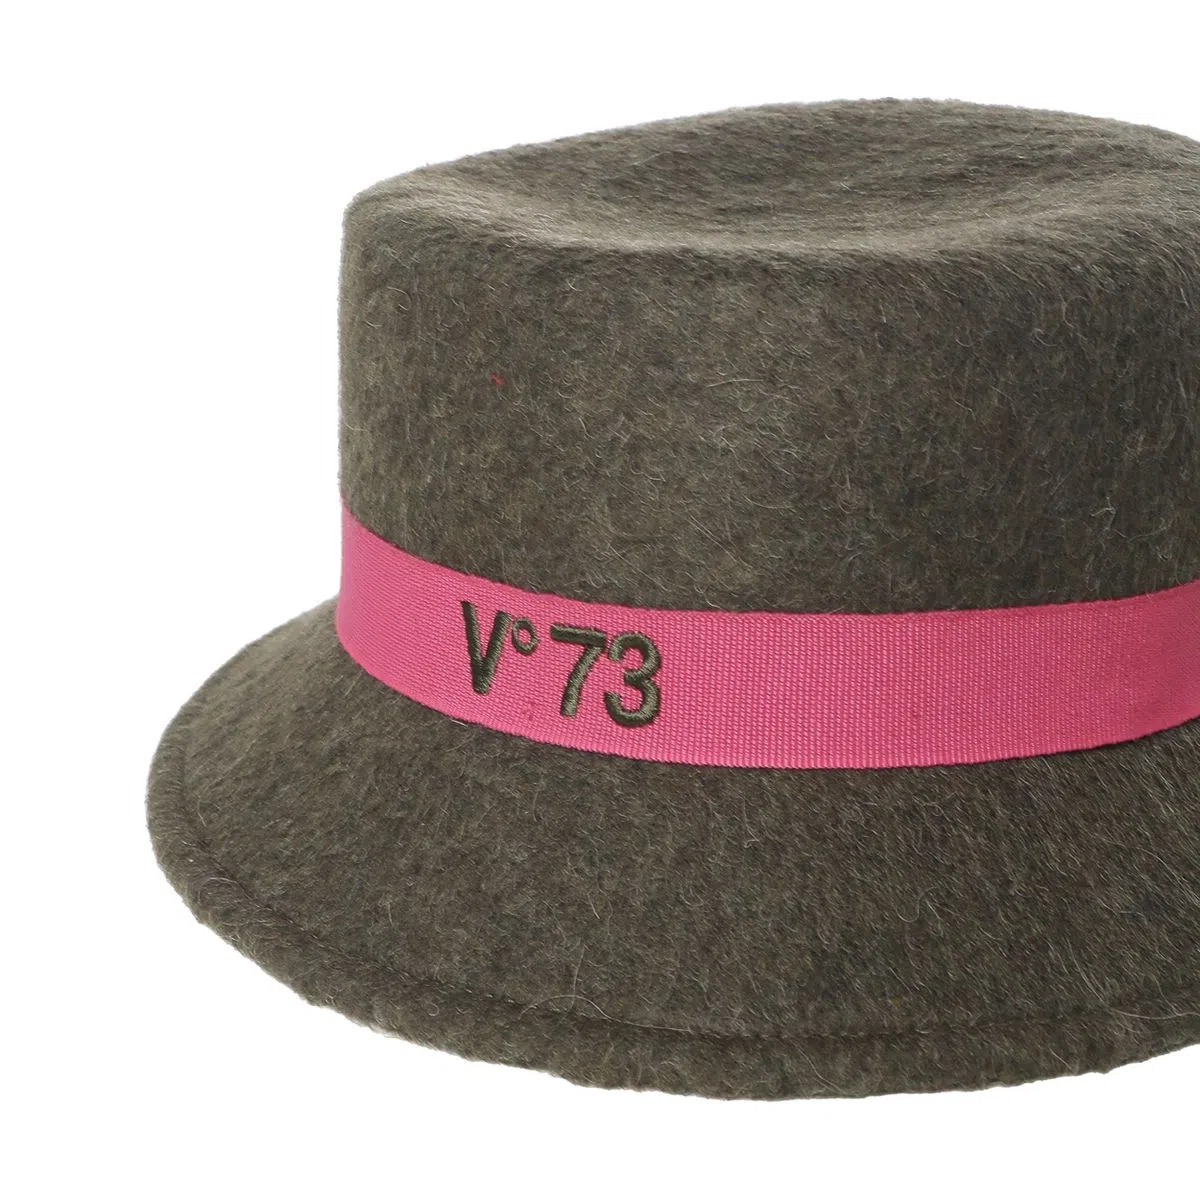 Vº73 sombrero en fieltro color verde - 4